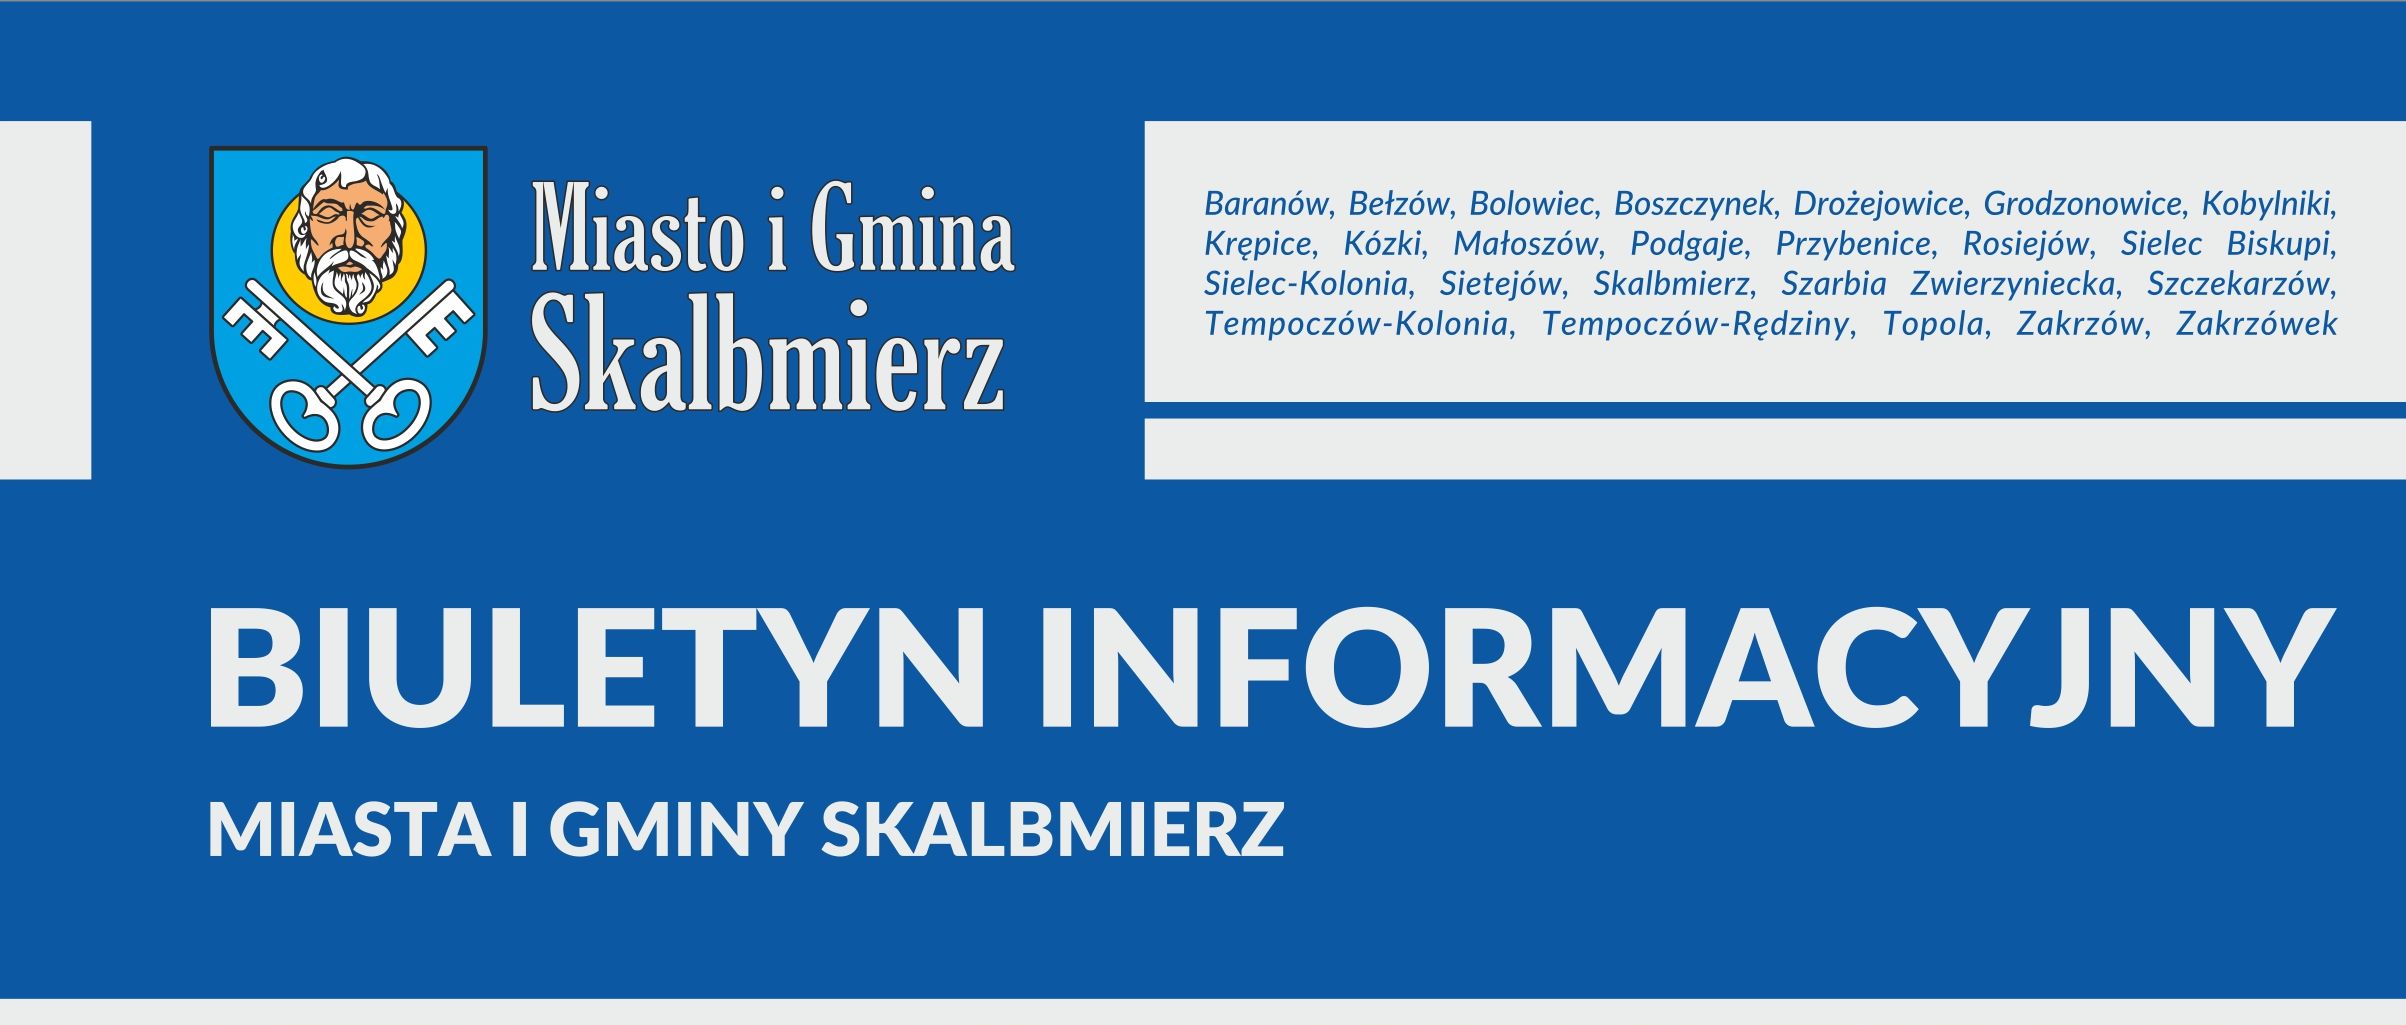 Logotyp Biuletynu Informacyjnego Urzędu Miasta i Gminy w Skalbmierzu 